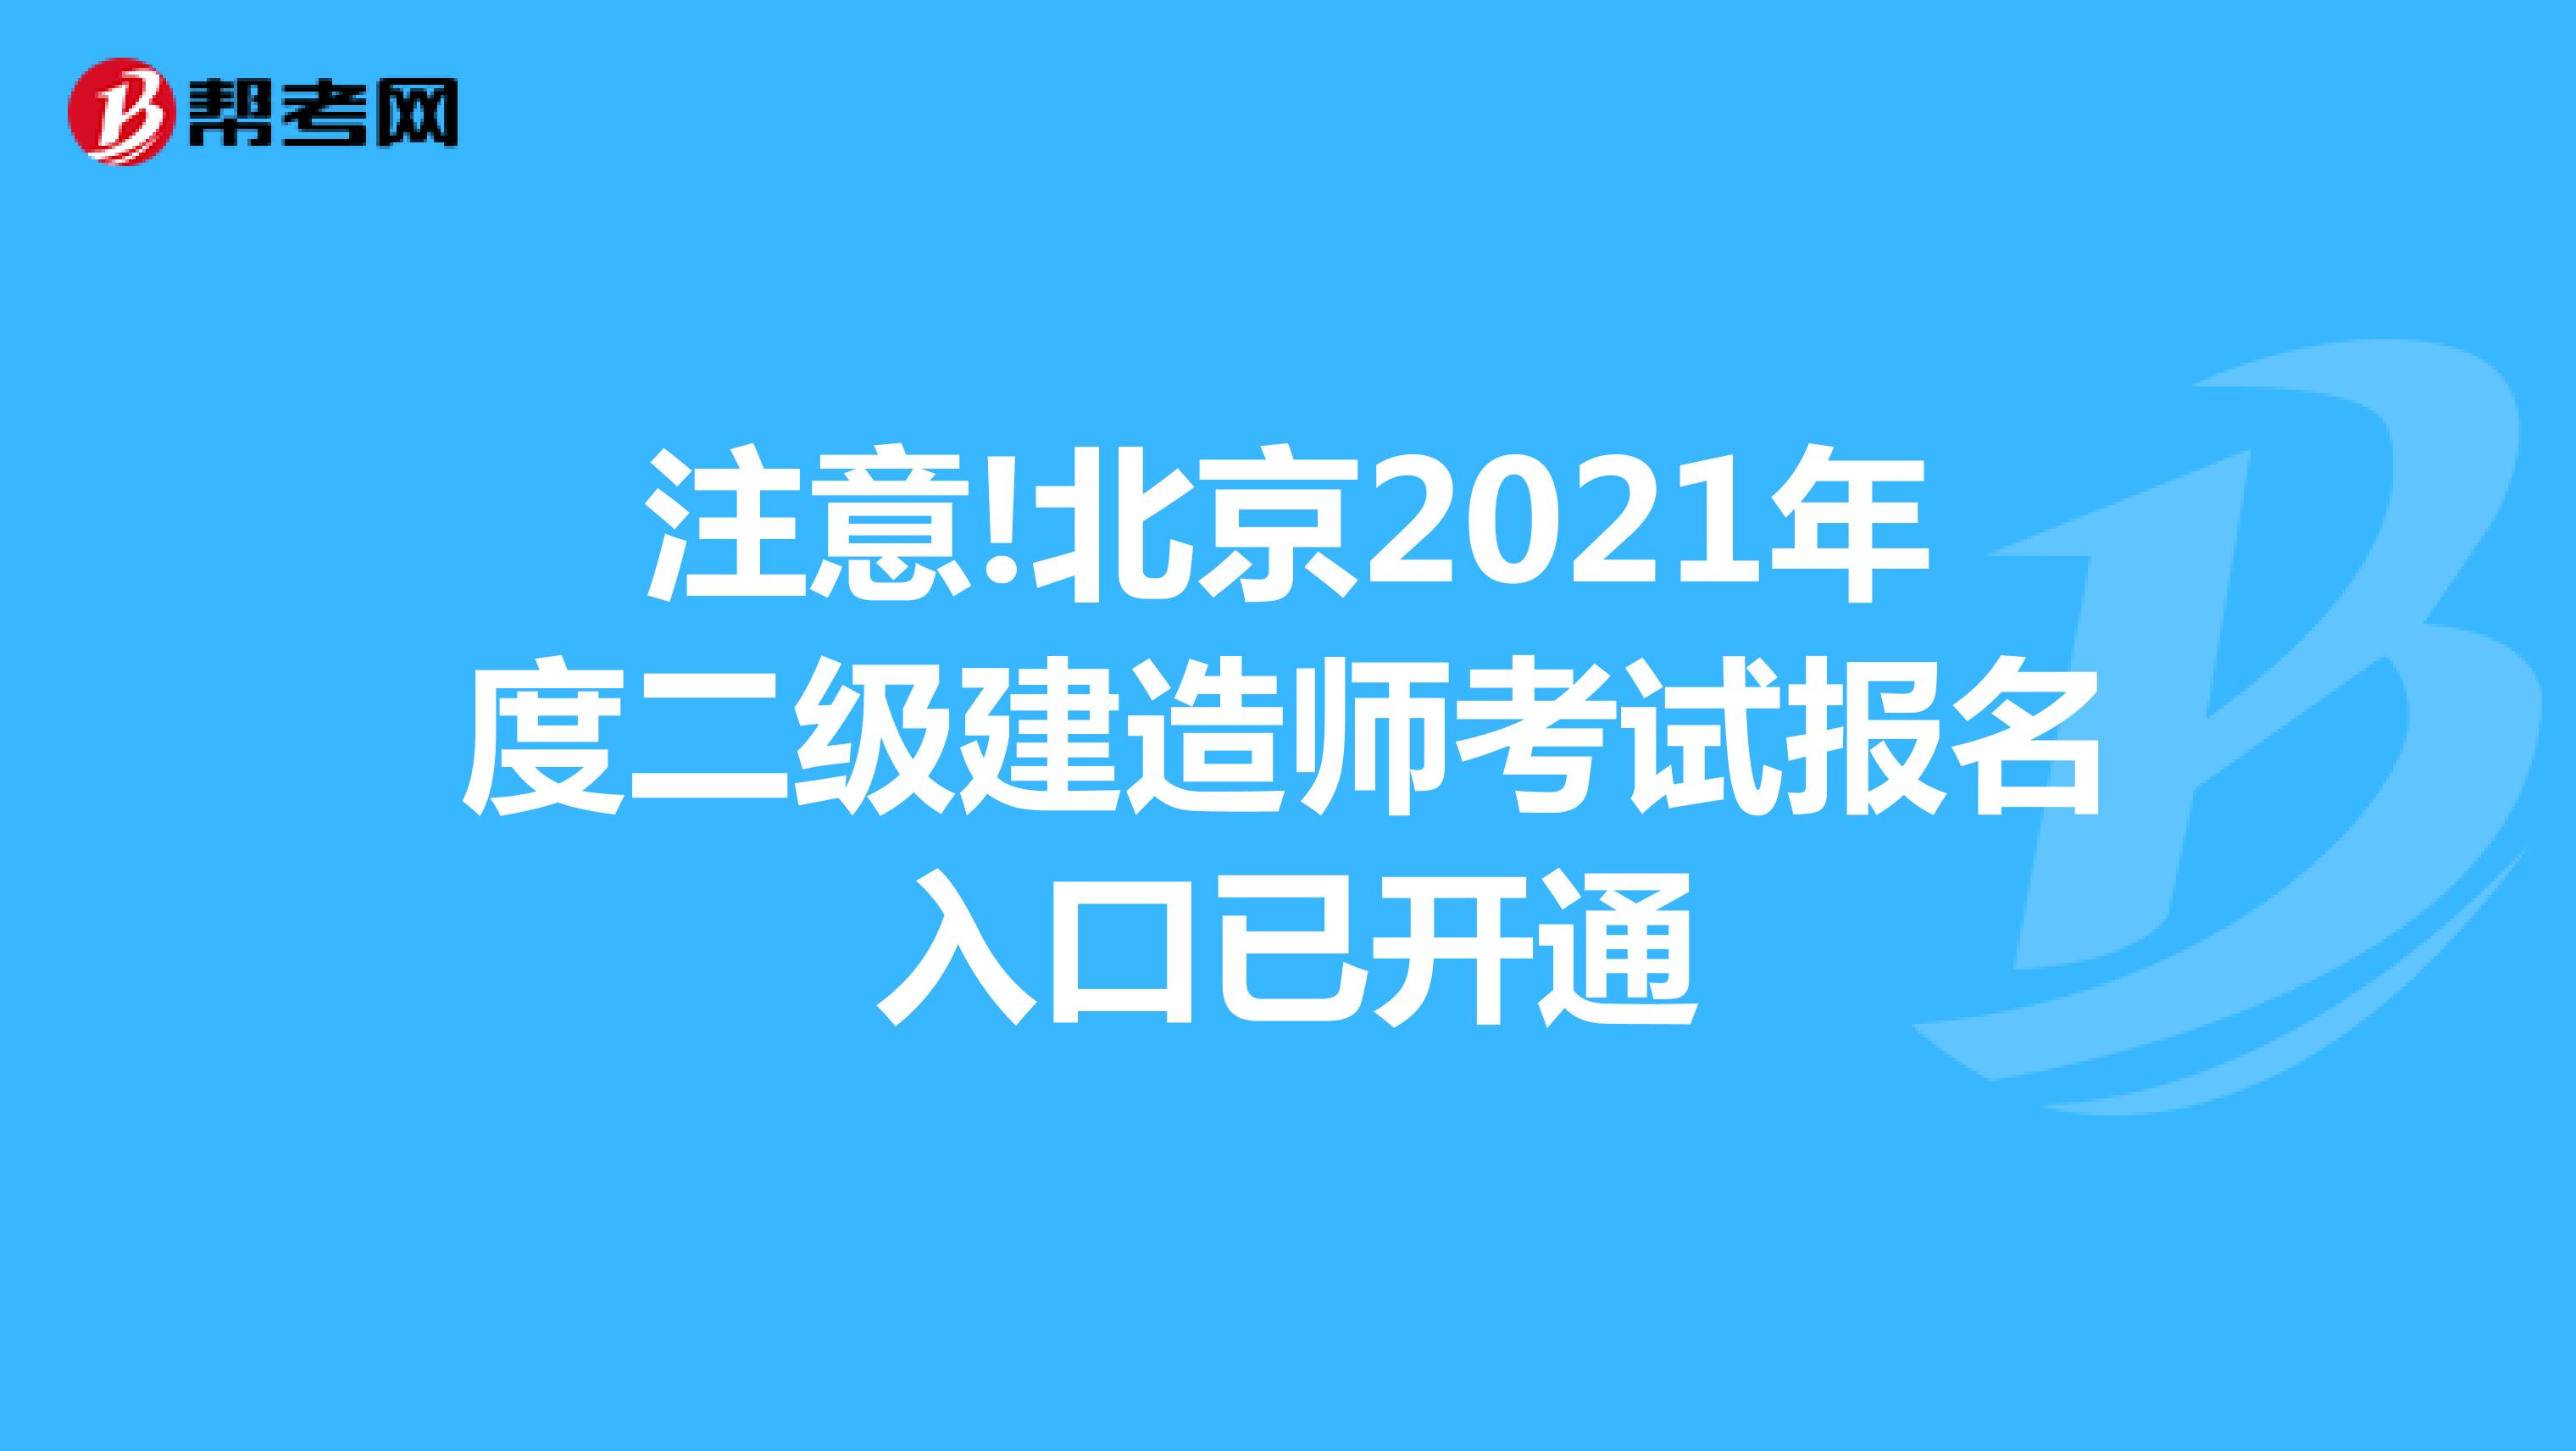 注意!北京2021年度二级建造师考试报名入口已开通